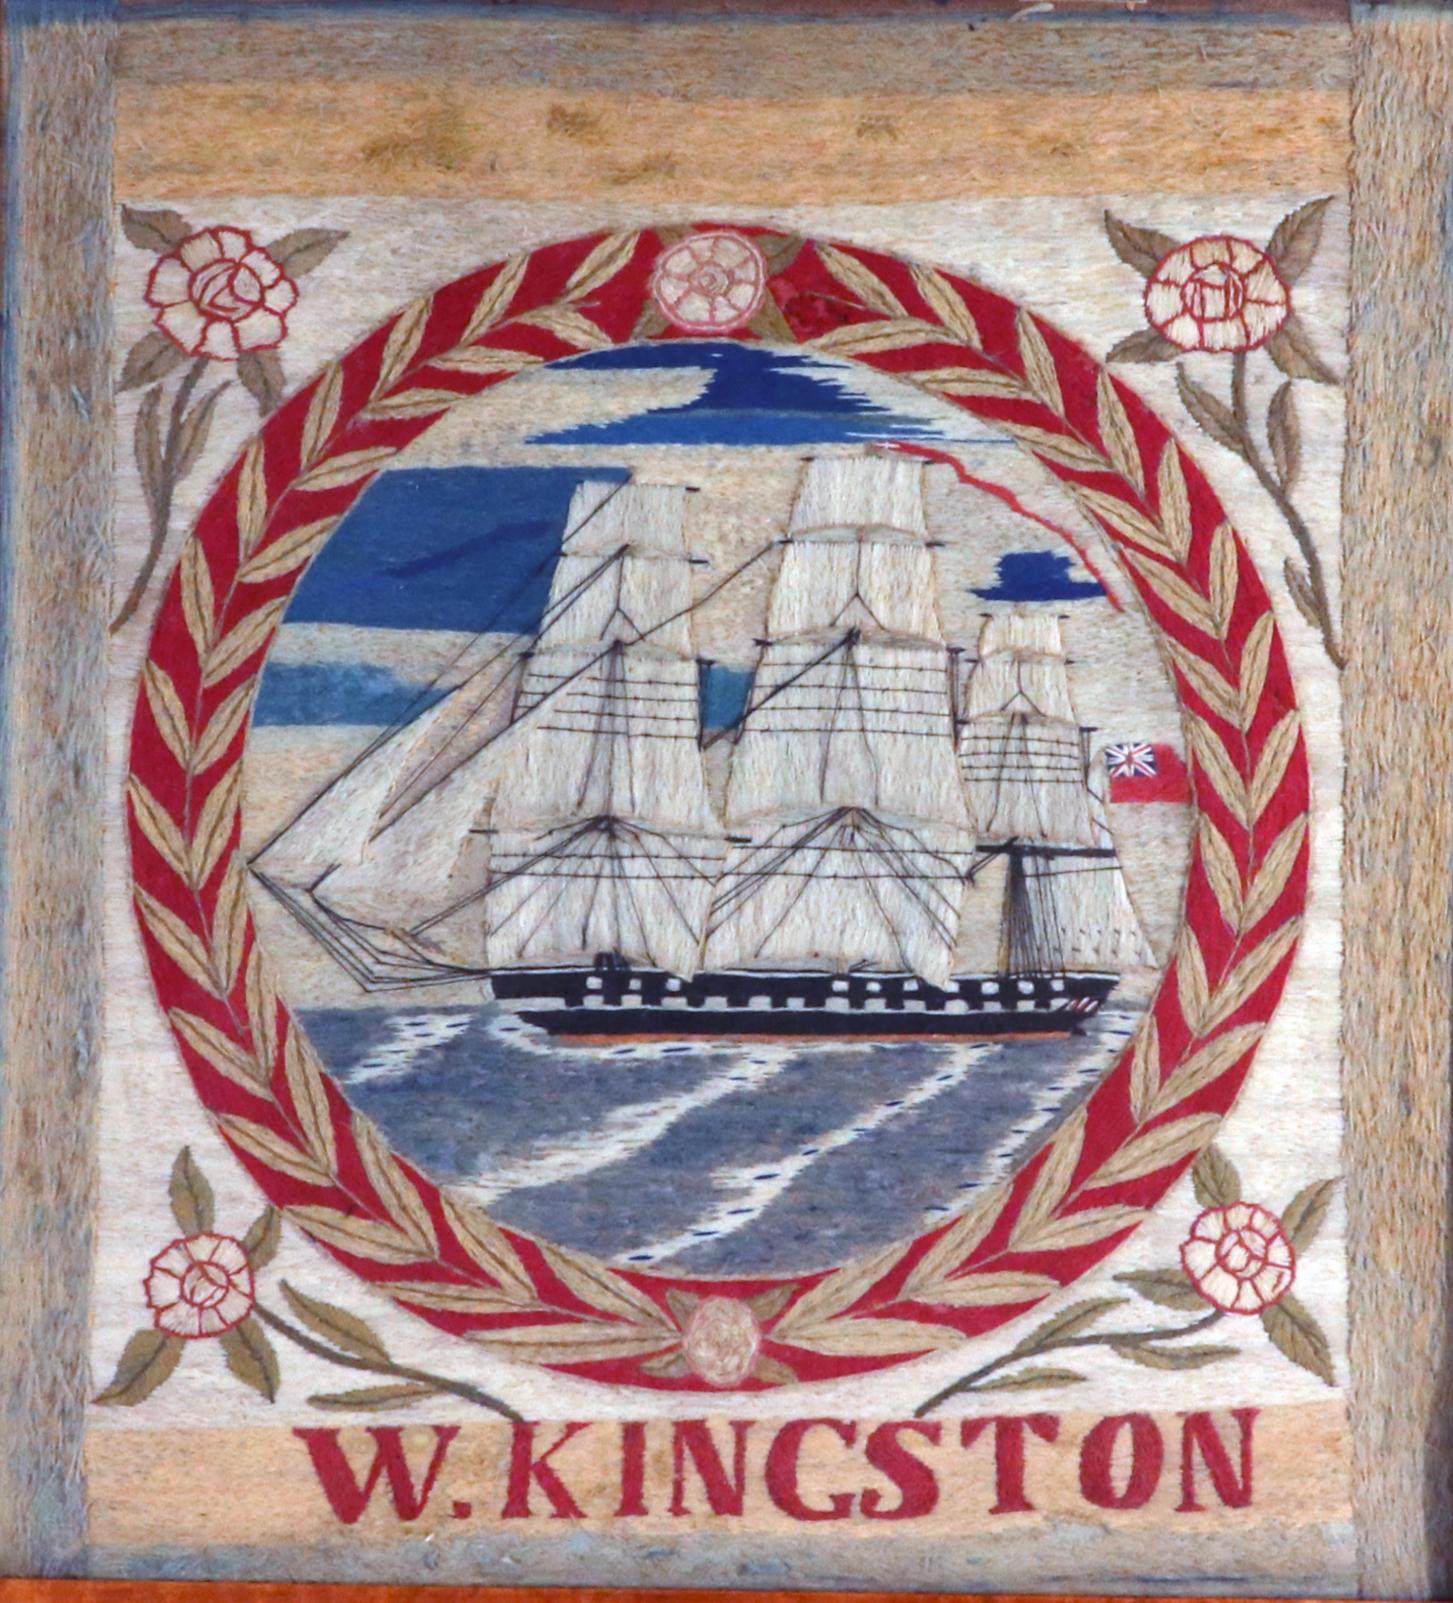 British Sailor's Woolwork,
Unterzeichnet W. Kingston,
CIRCA 1870

Die charmante und ungewöhnliche Wollarbeit eines Seemanns, bekannt als Woolies, befindet sich in einem Rahmen aus Ahornholz und zeigt eine Backbordansicht eines dreimastigen